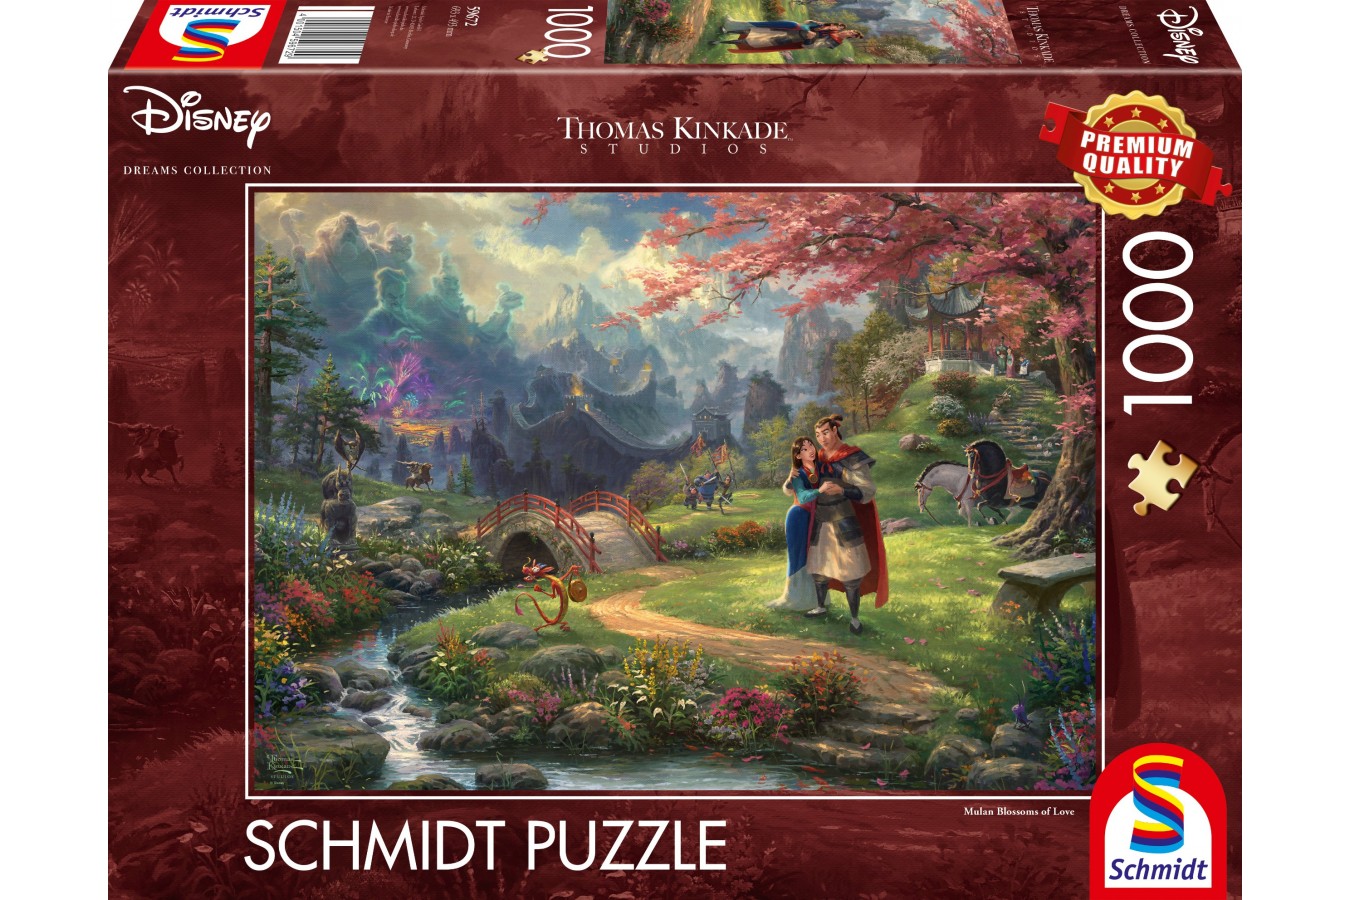 Puzzle Schmidt - Thomas Kinkade: Mulan, 1000 piese (59672)